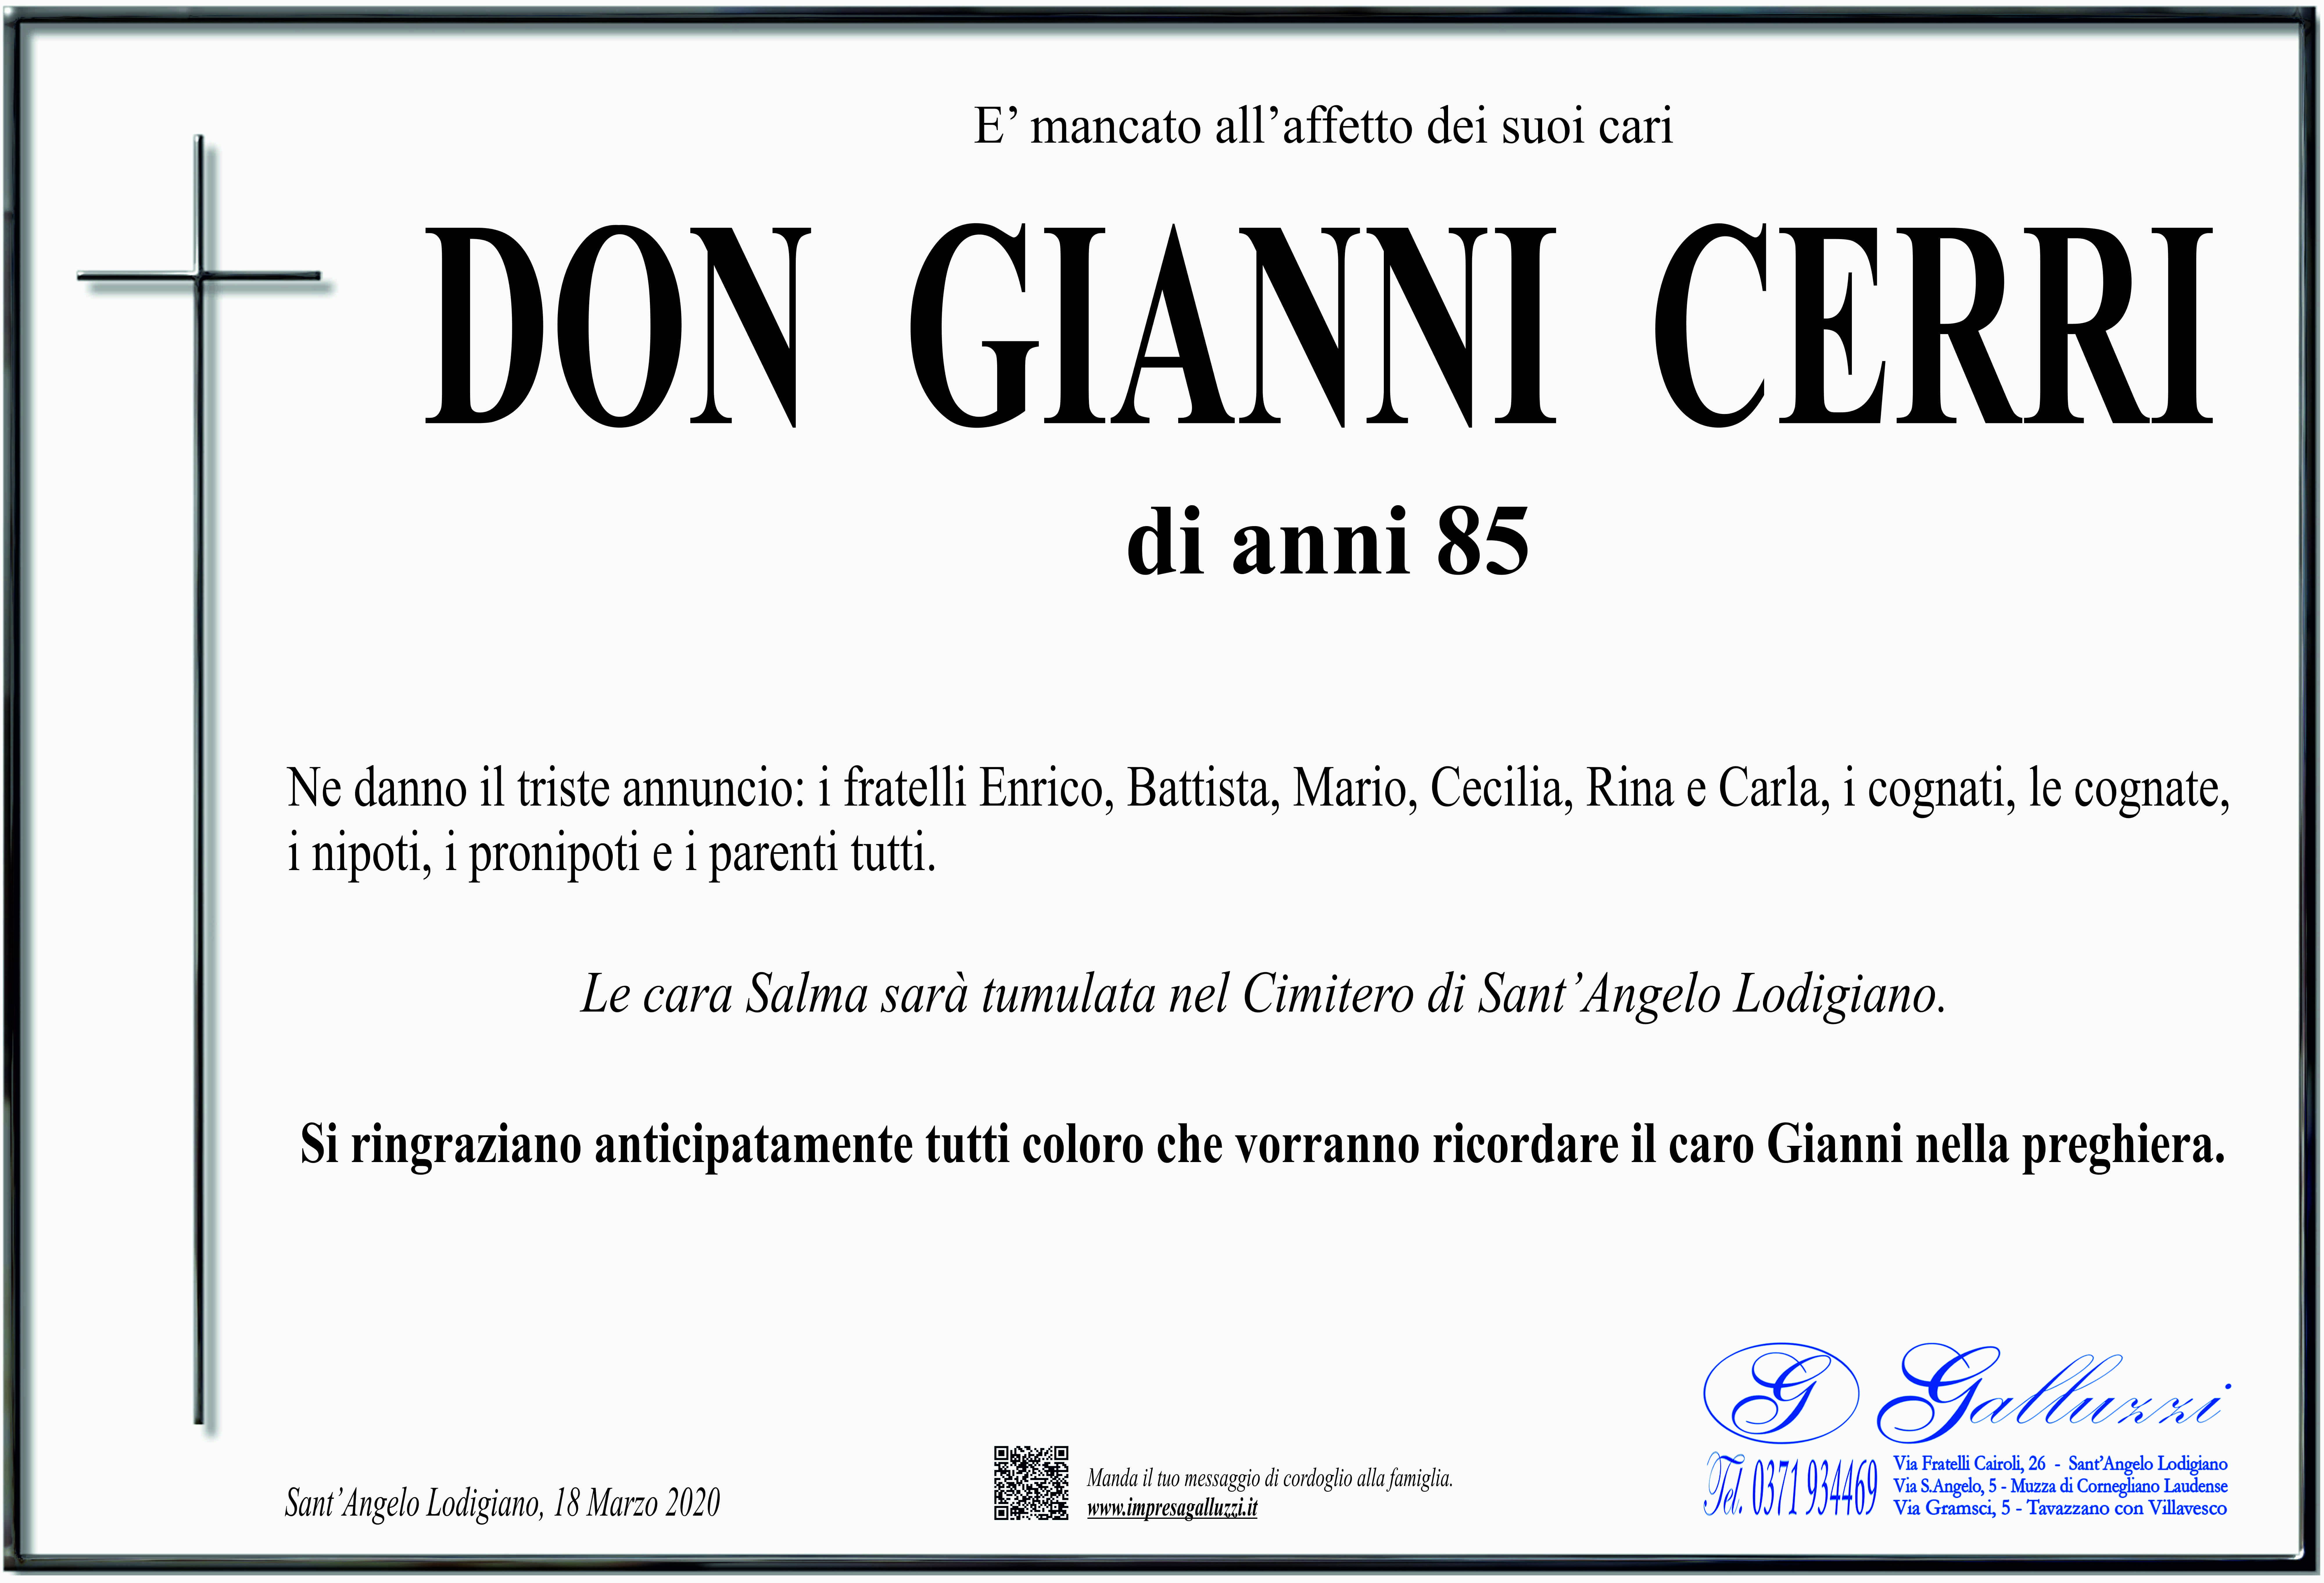 Don Giovanni Cerri